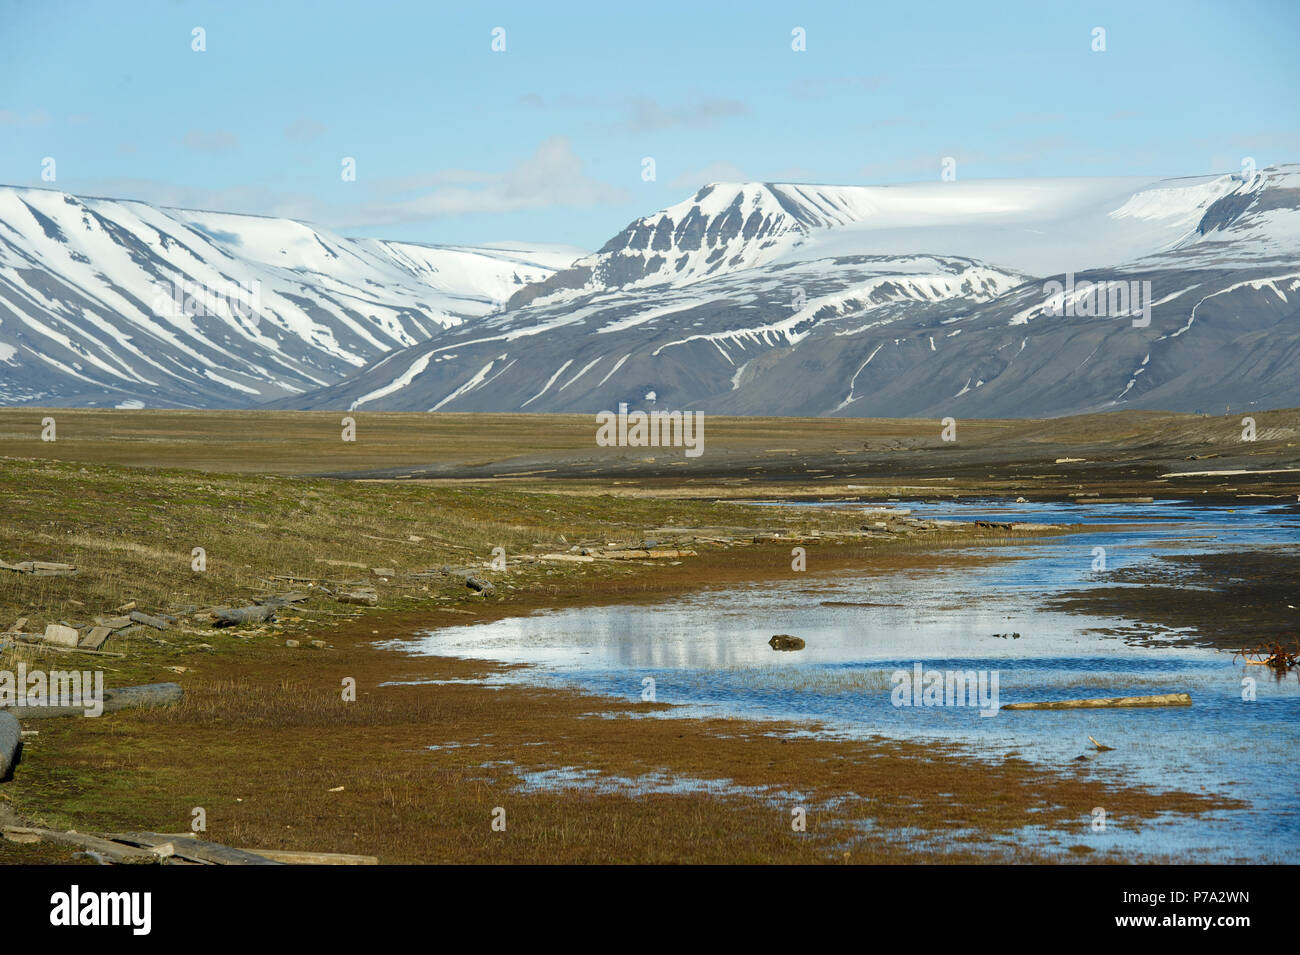 Arktische Tundra Szene auf Spitzbergen, Svalbard, Norwegen in der Arktis Stockfoto